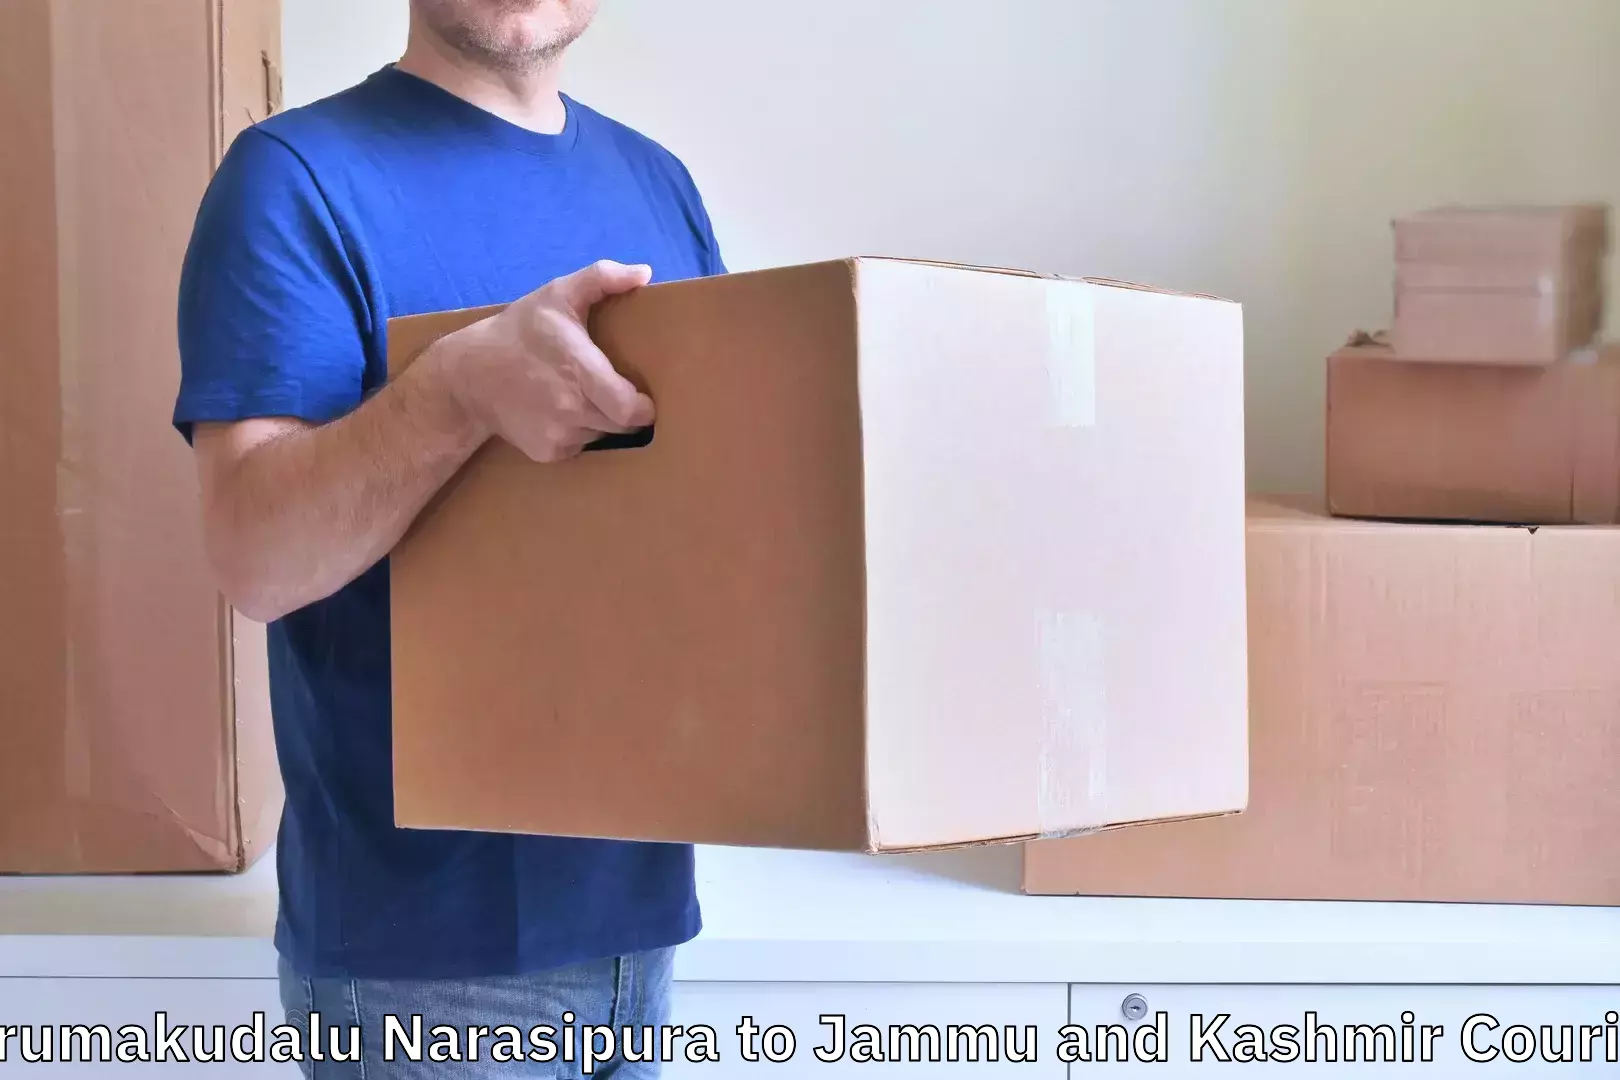 Luggage delivery app Tirumakudalu Narasipura to Kargil